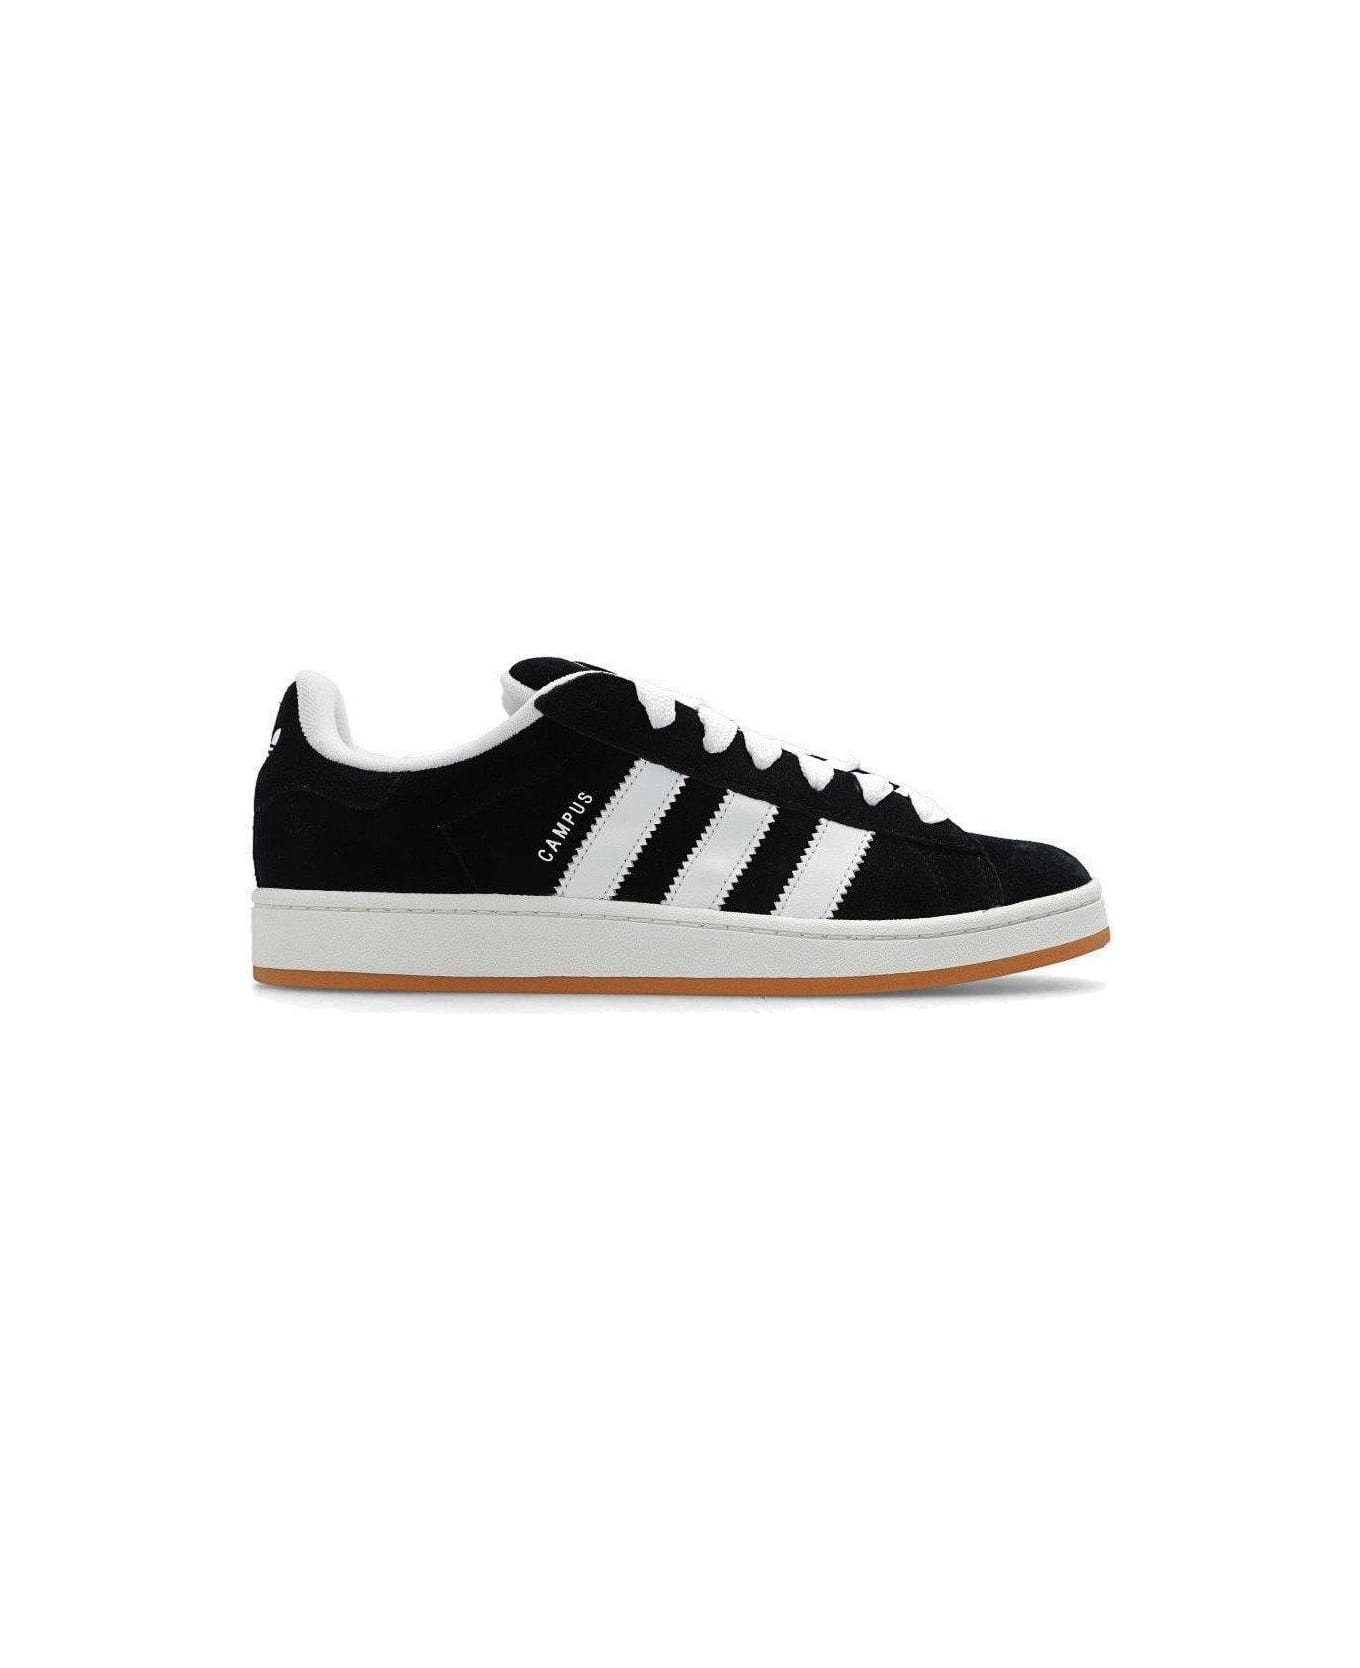 Adidas Originals Campus 00s Low-top Sneakers - Black White スニーカー